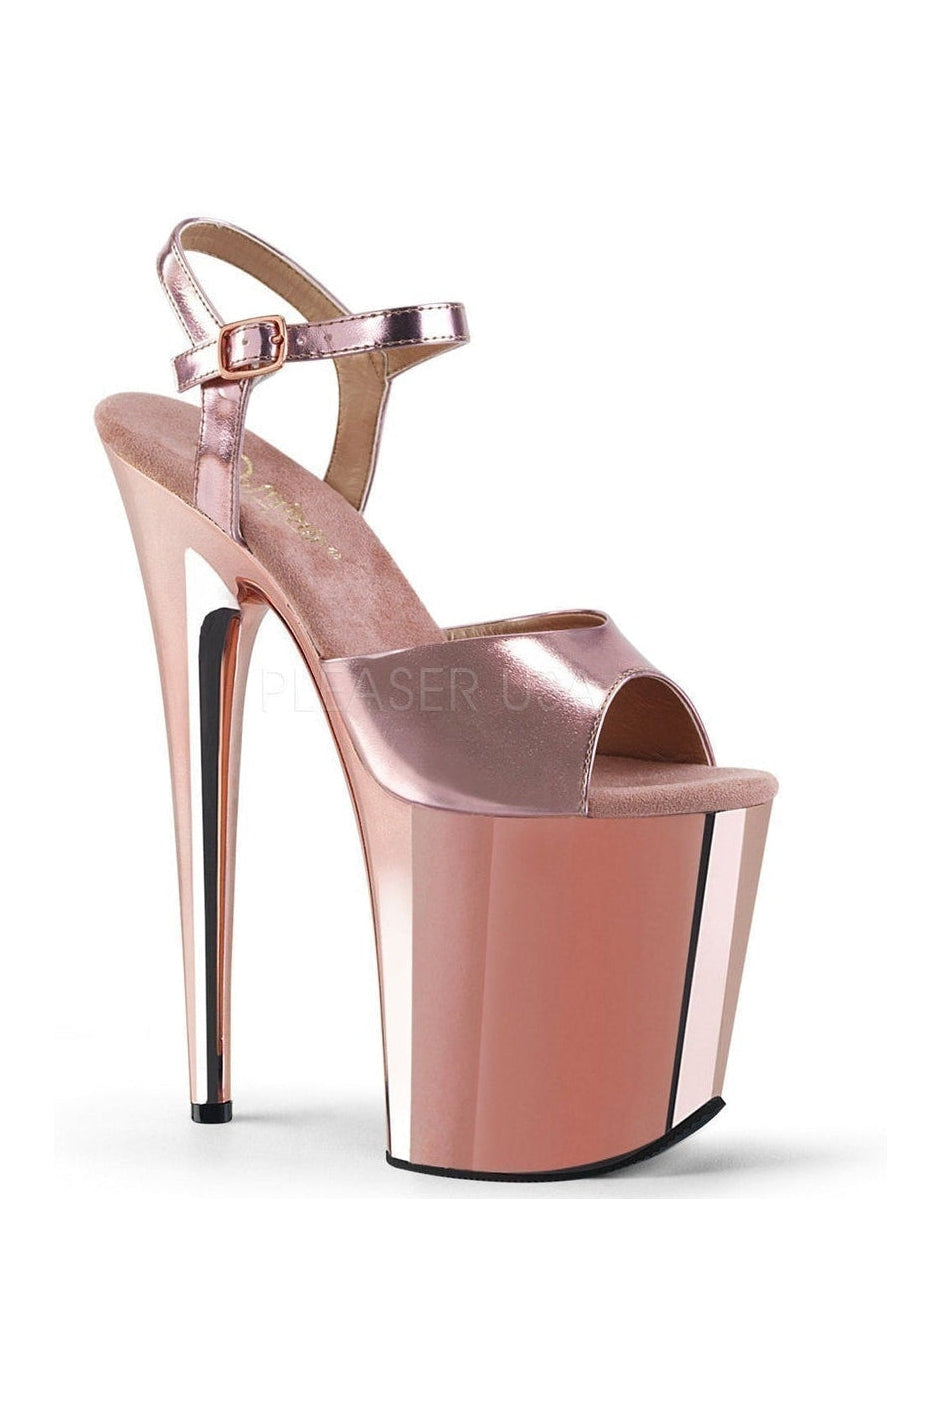 FLAMINGO-809 Platform Sandal | Gold Faux Leather-Pleaser-Gold-Sandals-SEXYSHOES.COM